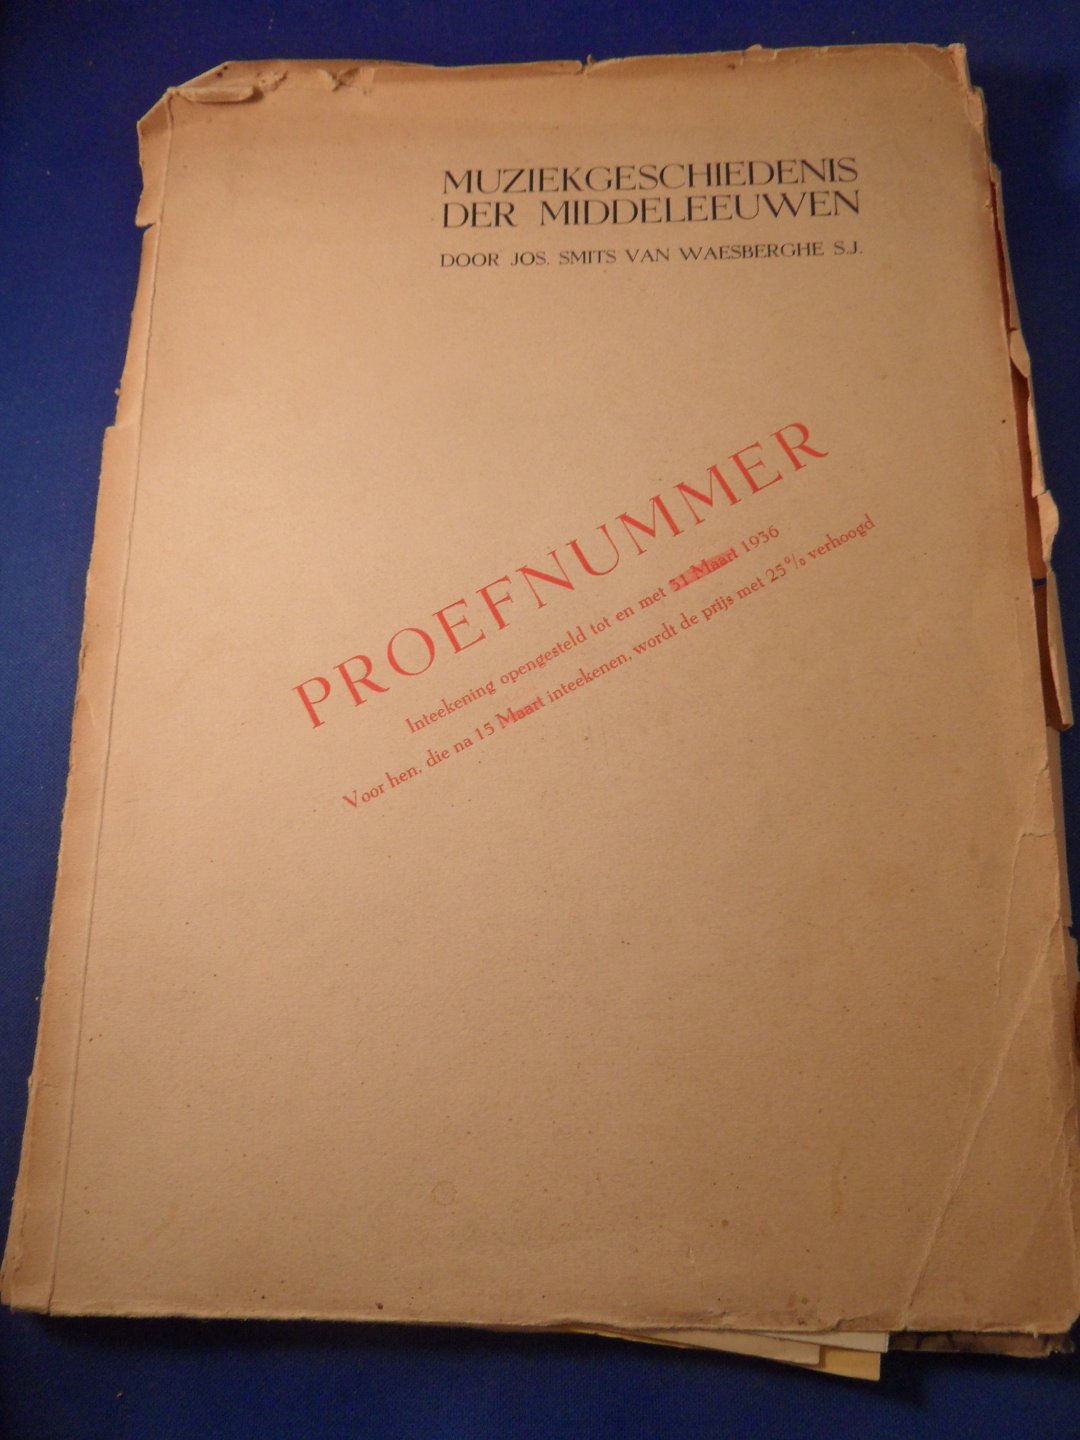 Smits van Waesberghe S.J., Jos - Proefnummer Muziekgeschiedenis der Middeleeuwen